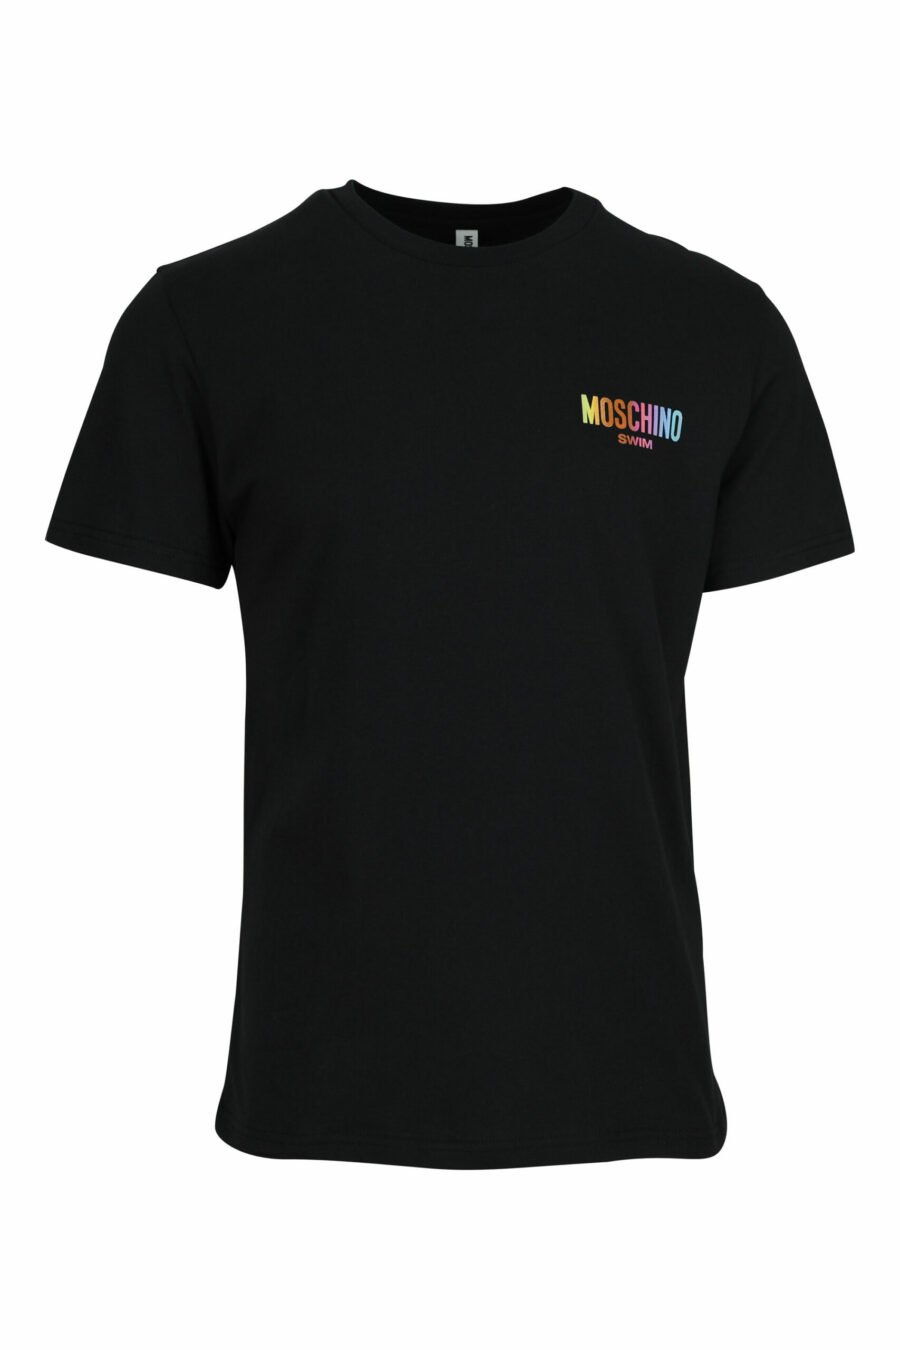 T-shirt preta com minilogo multicolorido - 667113672588 scaled